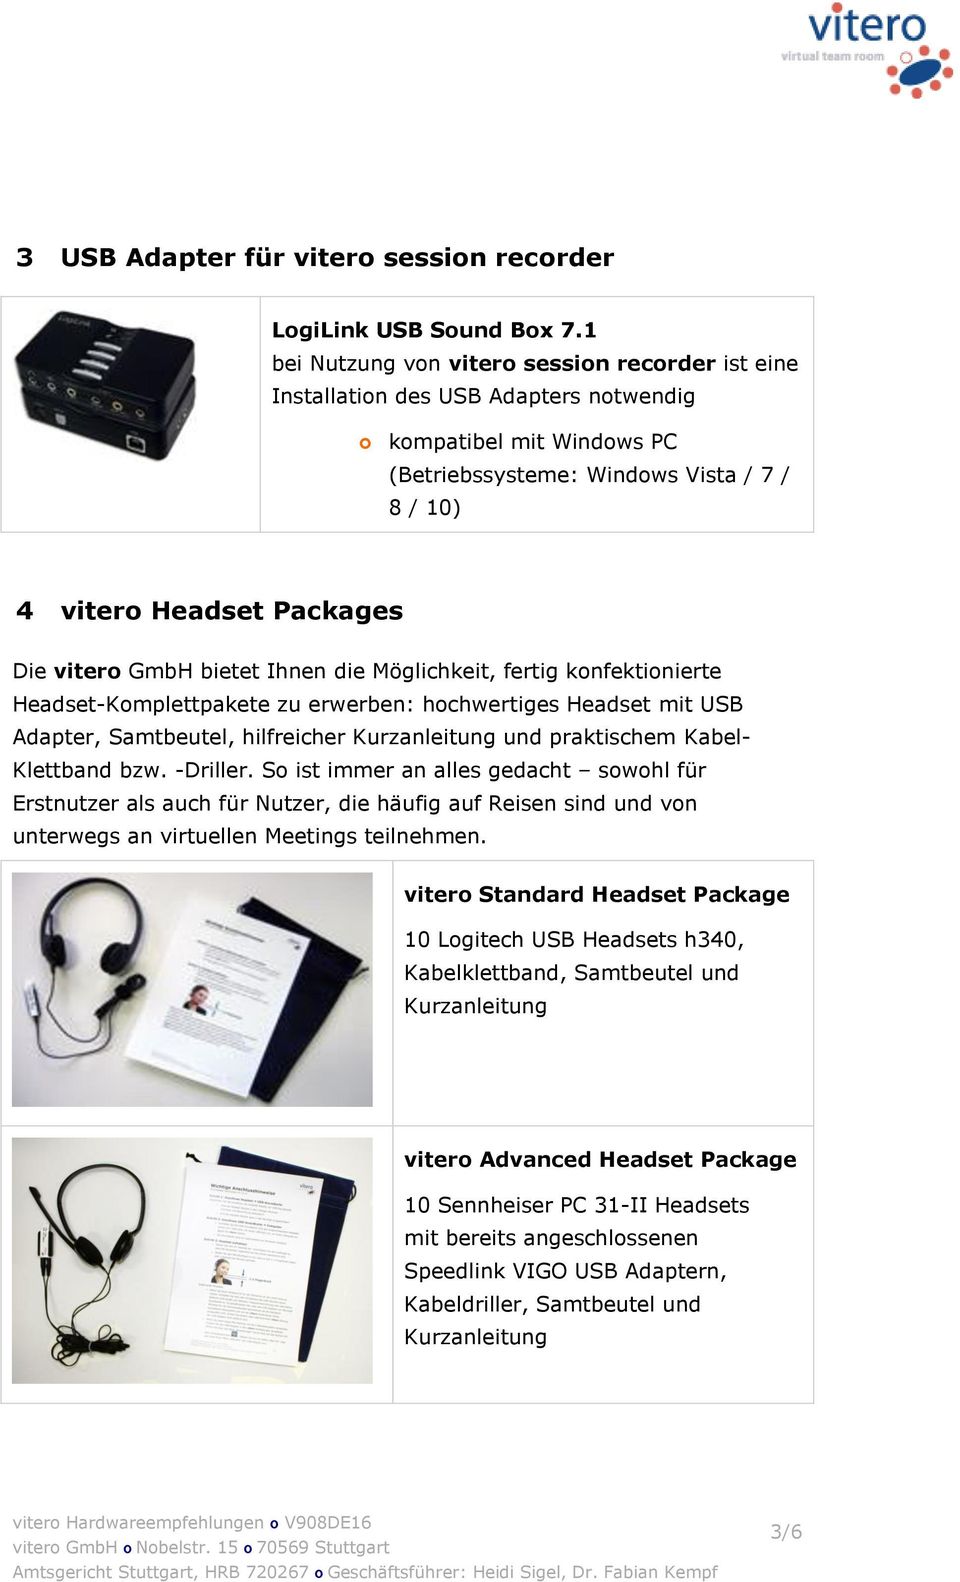 vitero GmbH bietet Ihnen die Möglichkeit, fertig konfektionierte Headset-Komplettpakete zu erwerben: hochwertiges Headset mit USB Adapter, Samtbeutel, hilfreicher Kurzanleitung und praktischem Kabel-